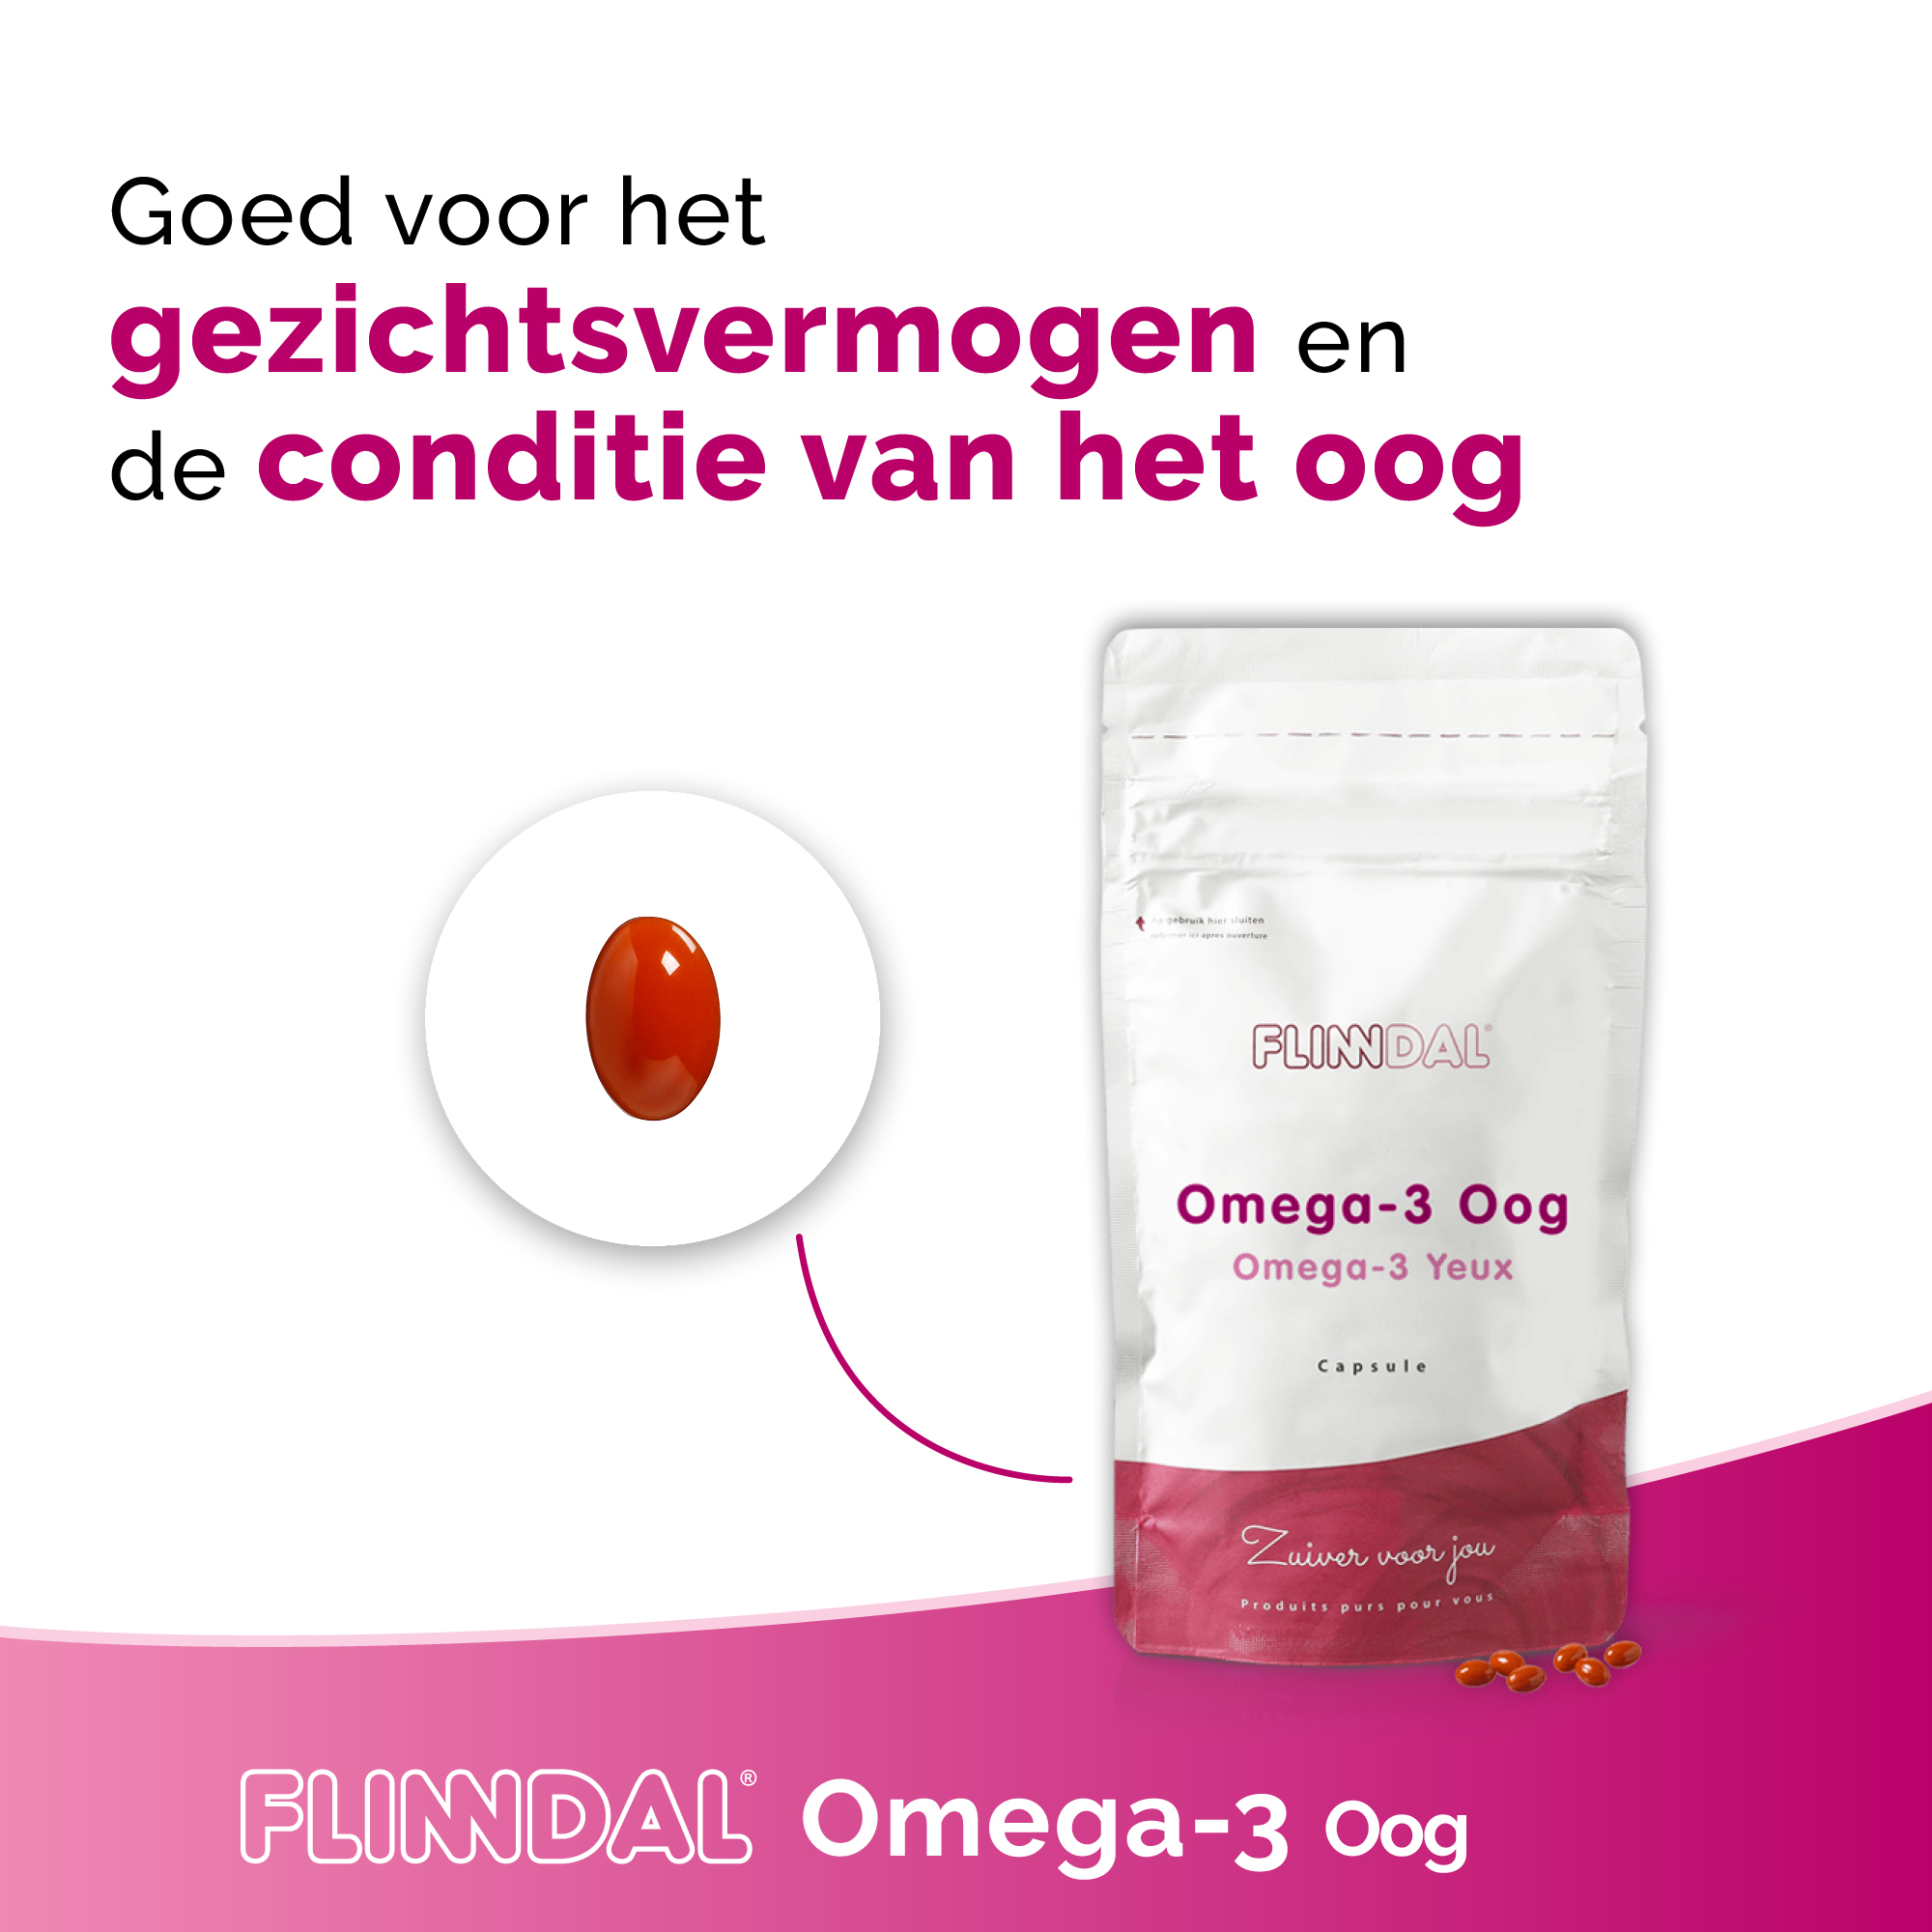 Omega 3 Oog Nut